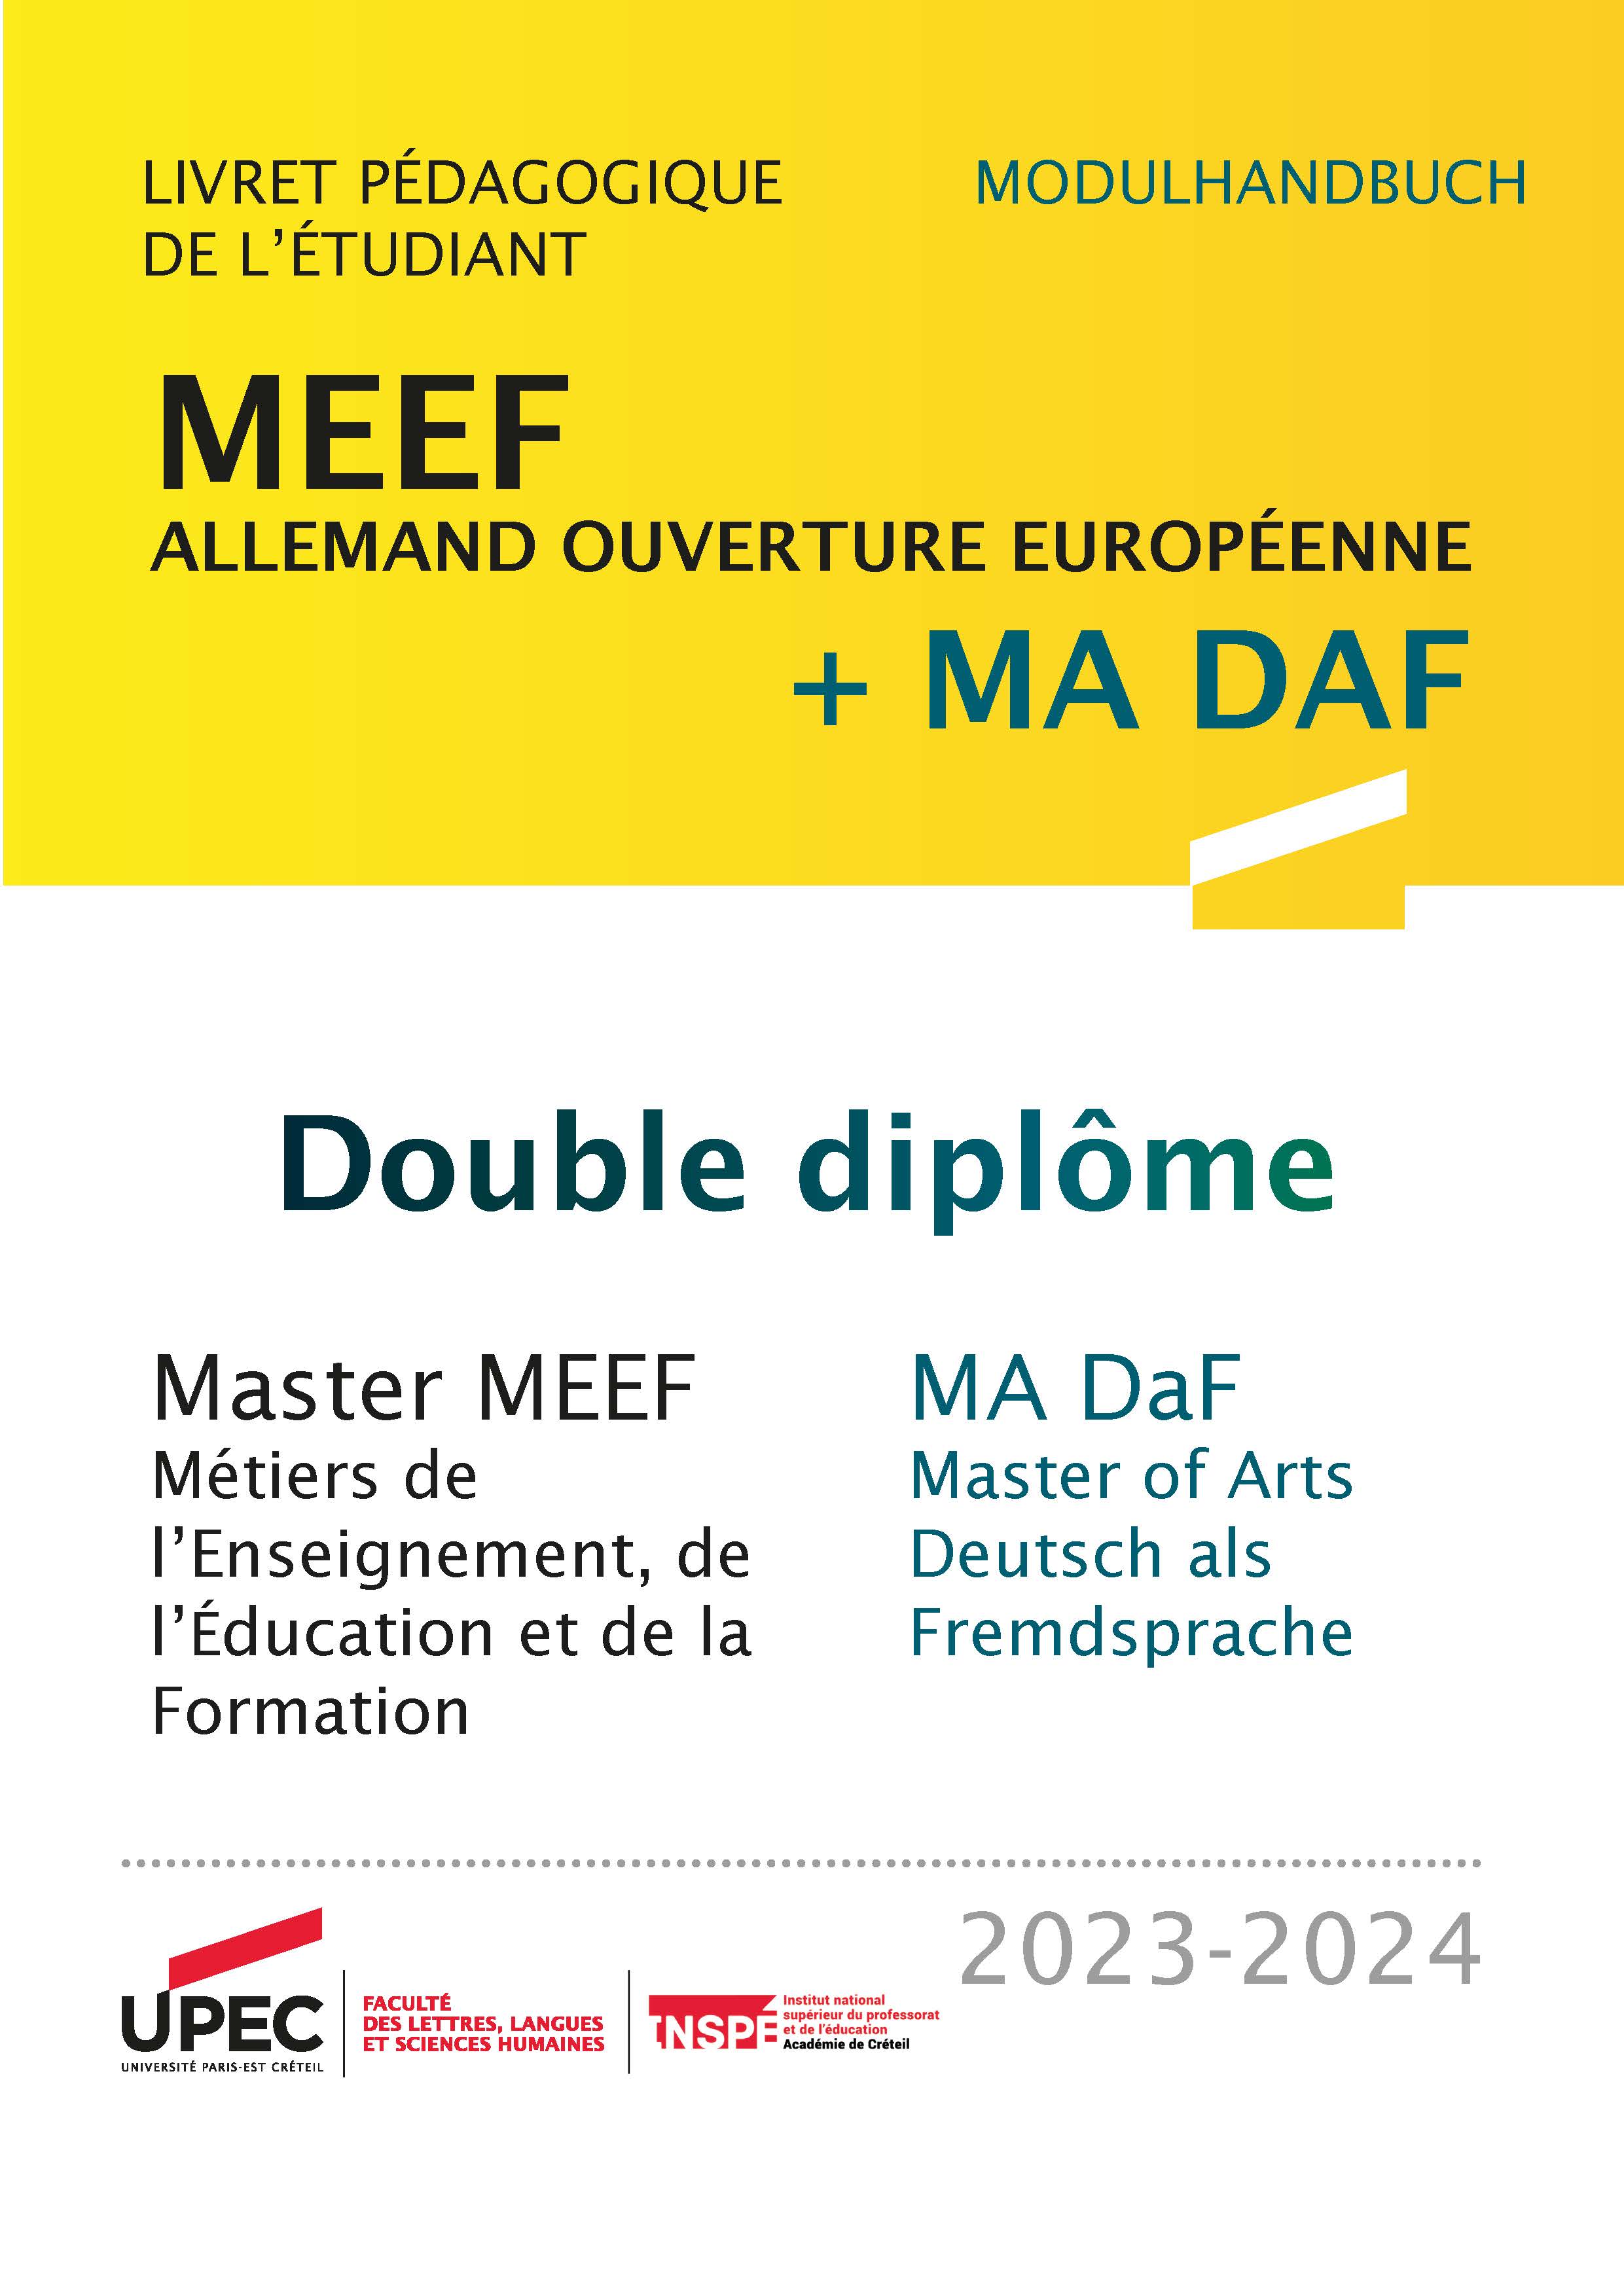 Brochure bilingue MEEF Allemand ouverture européenne DOUBLE MASTER - COUV